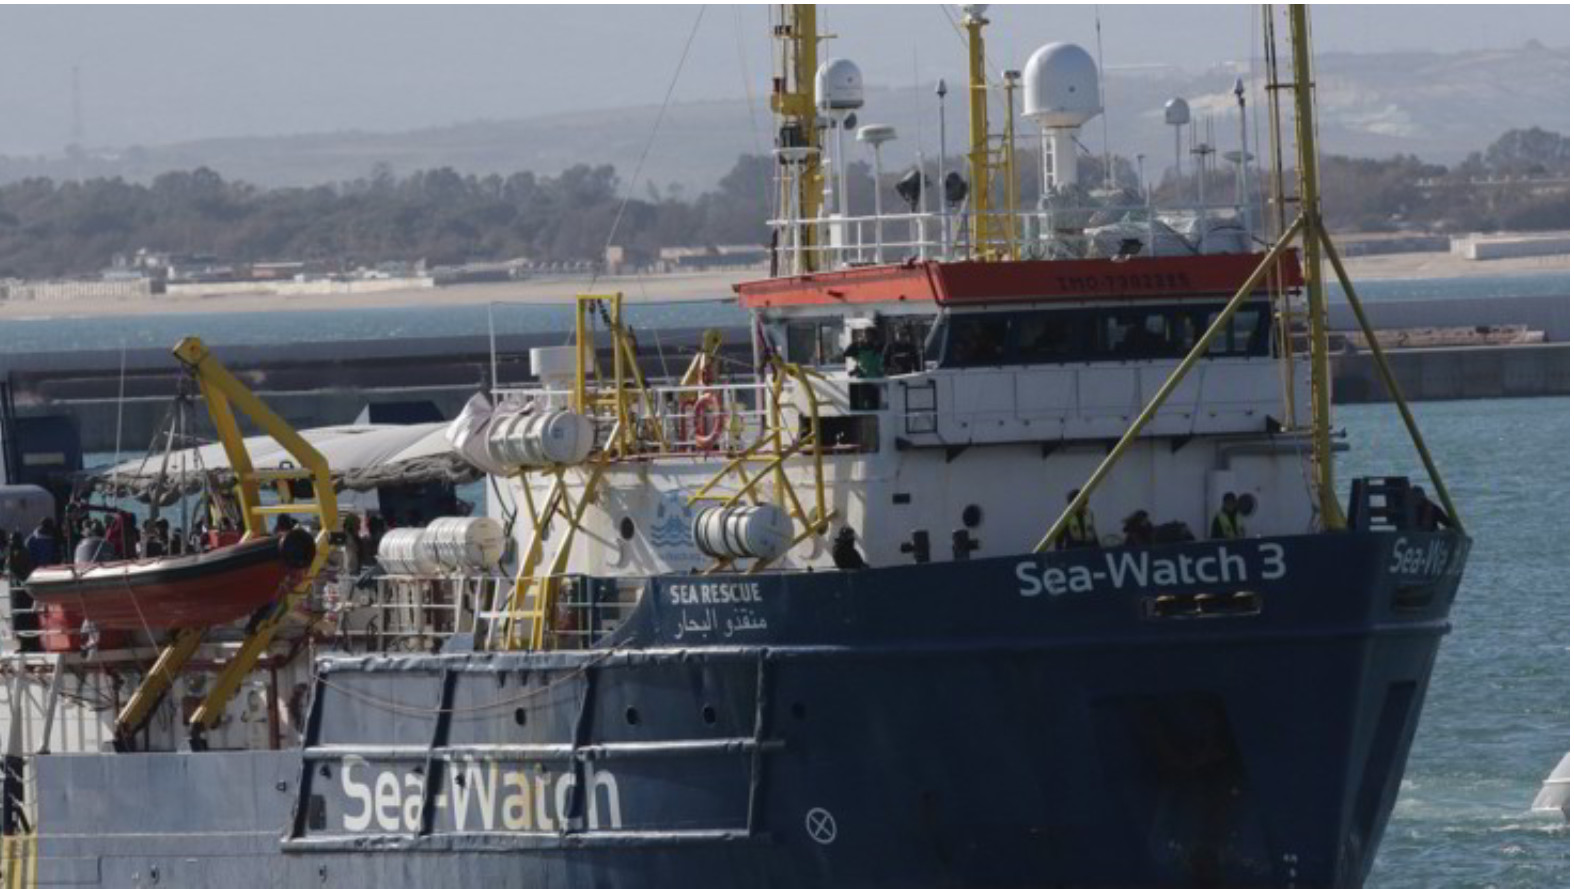 Sea Watch 3 a un miglio da Lampedusa. Gdf a bordo: “Situazione si sta sbloccando”. Sbarcate 2 persone per ragioni mediche